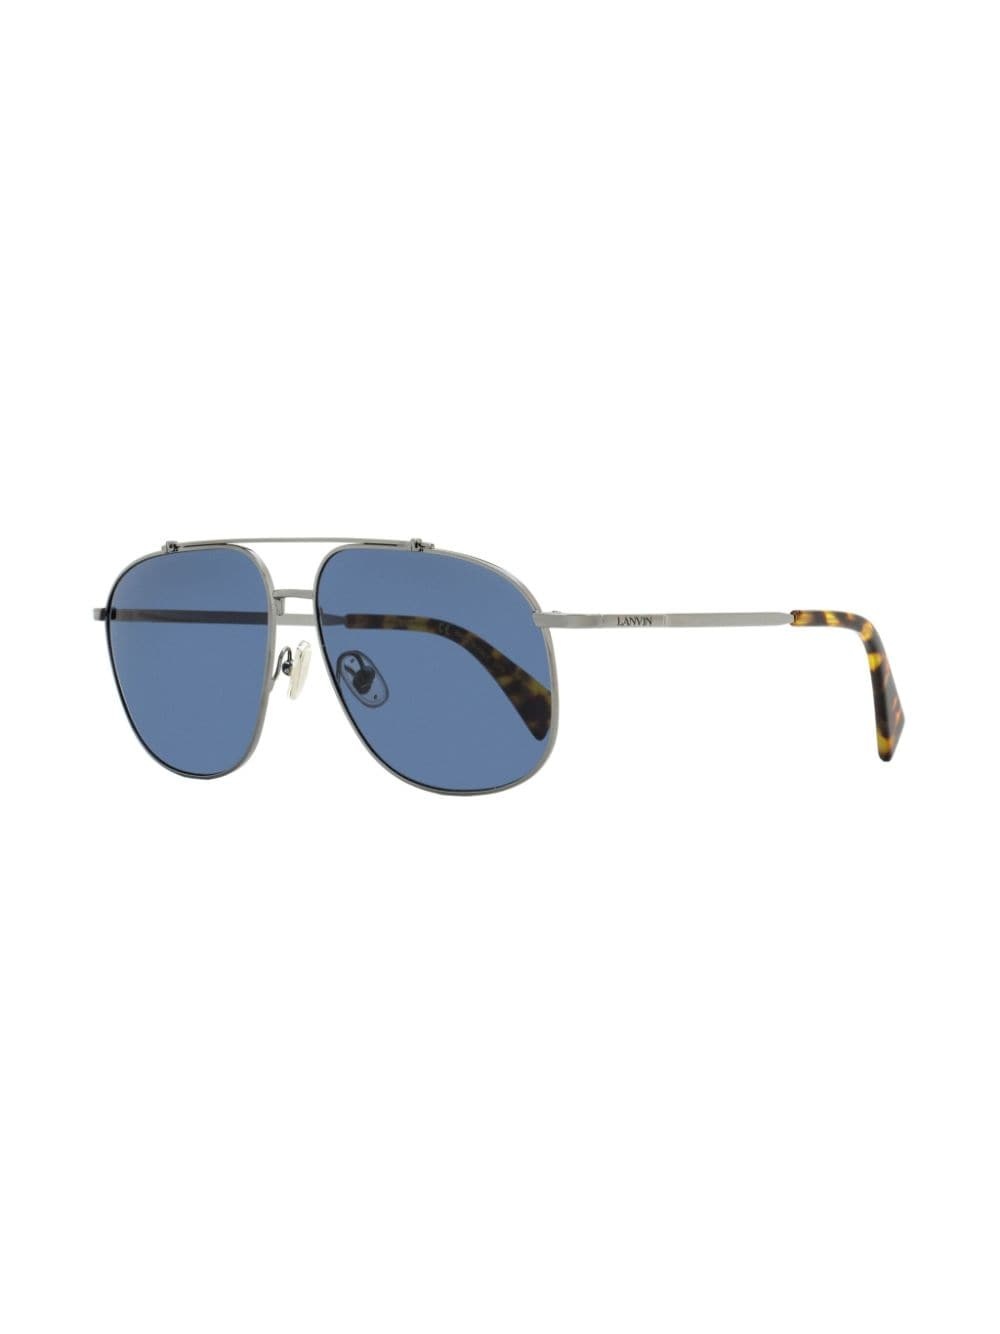 navigator-frame sunglasses - 2